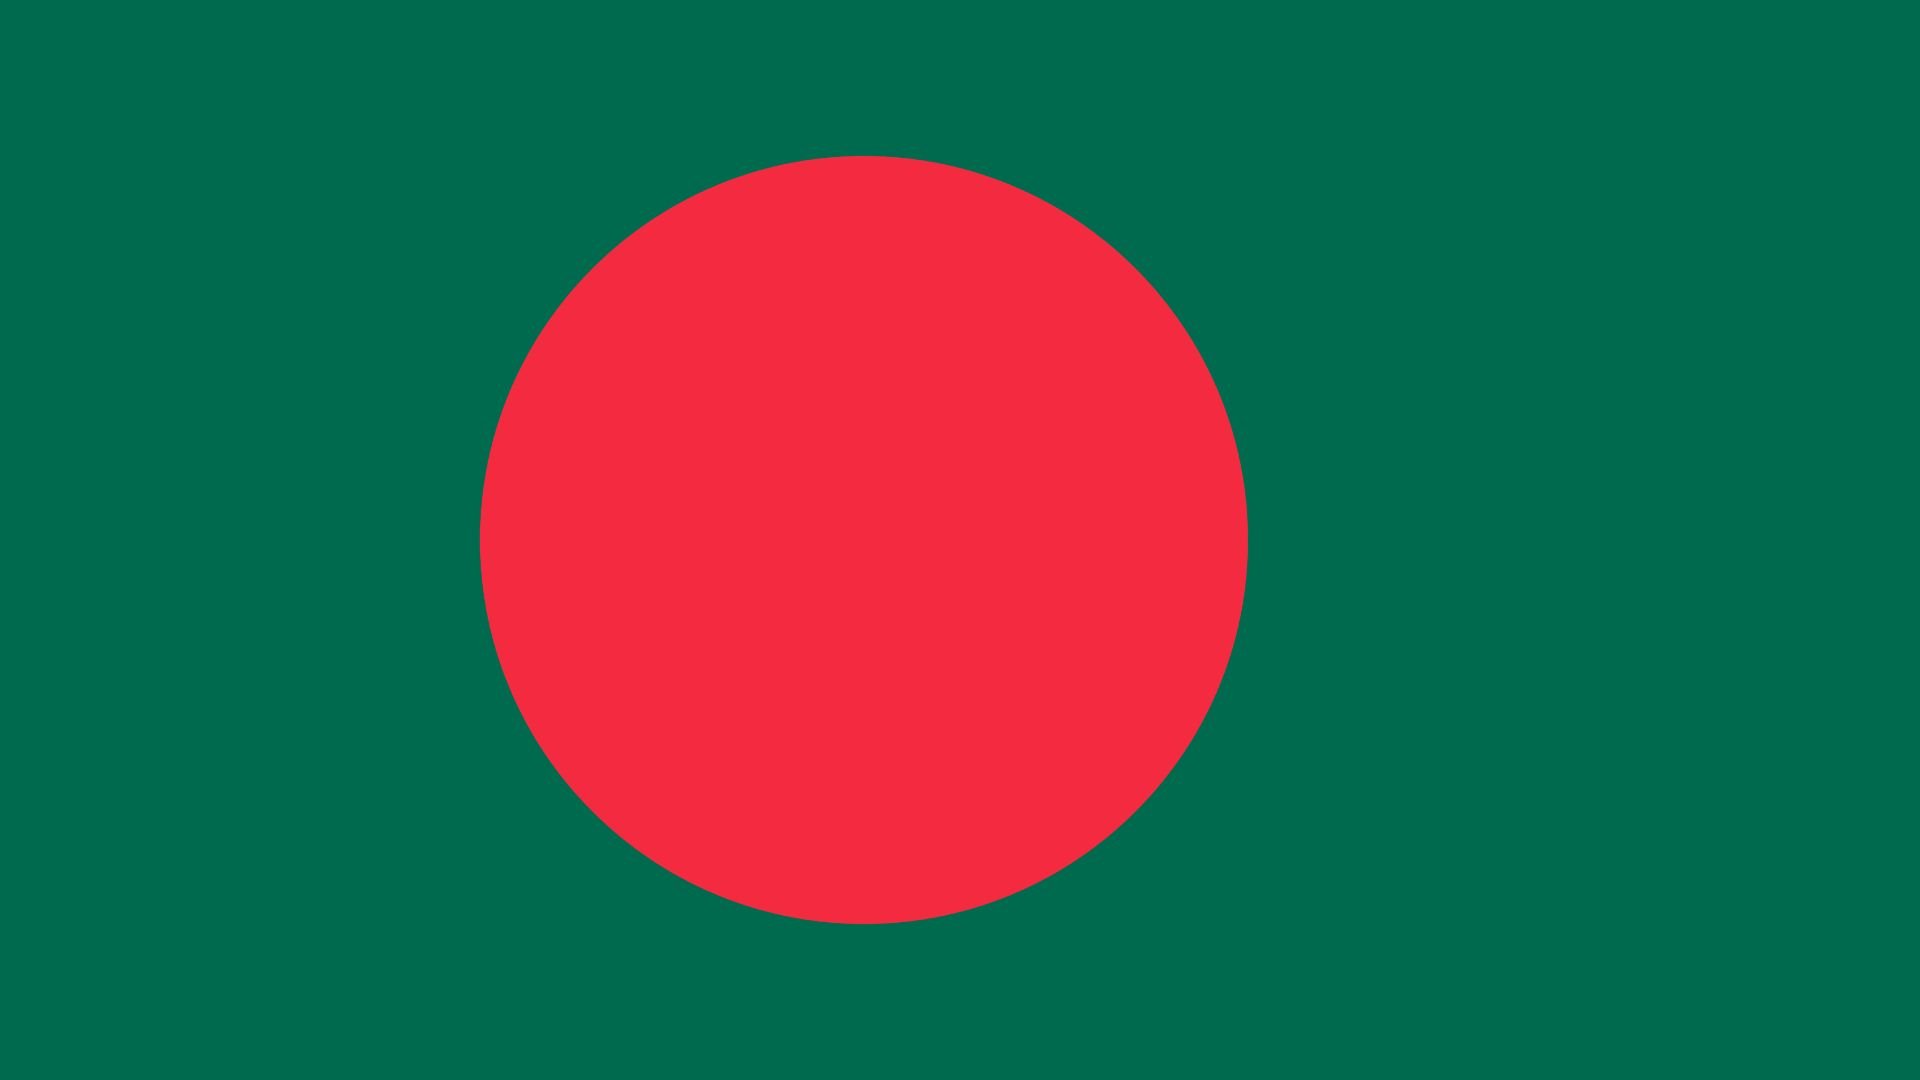 A bandeira do Bangladesh traz as cores vermelho e verde e lembra a do Japão. O disco vermelho no centro, representa o sol e também simboliza o sangue dos que tombaram pela independência do Bangladesh. O fundo verde representa a exuberante terra do país.